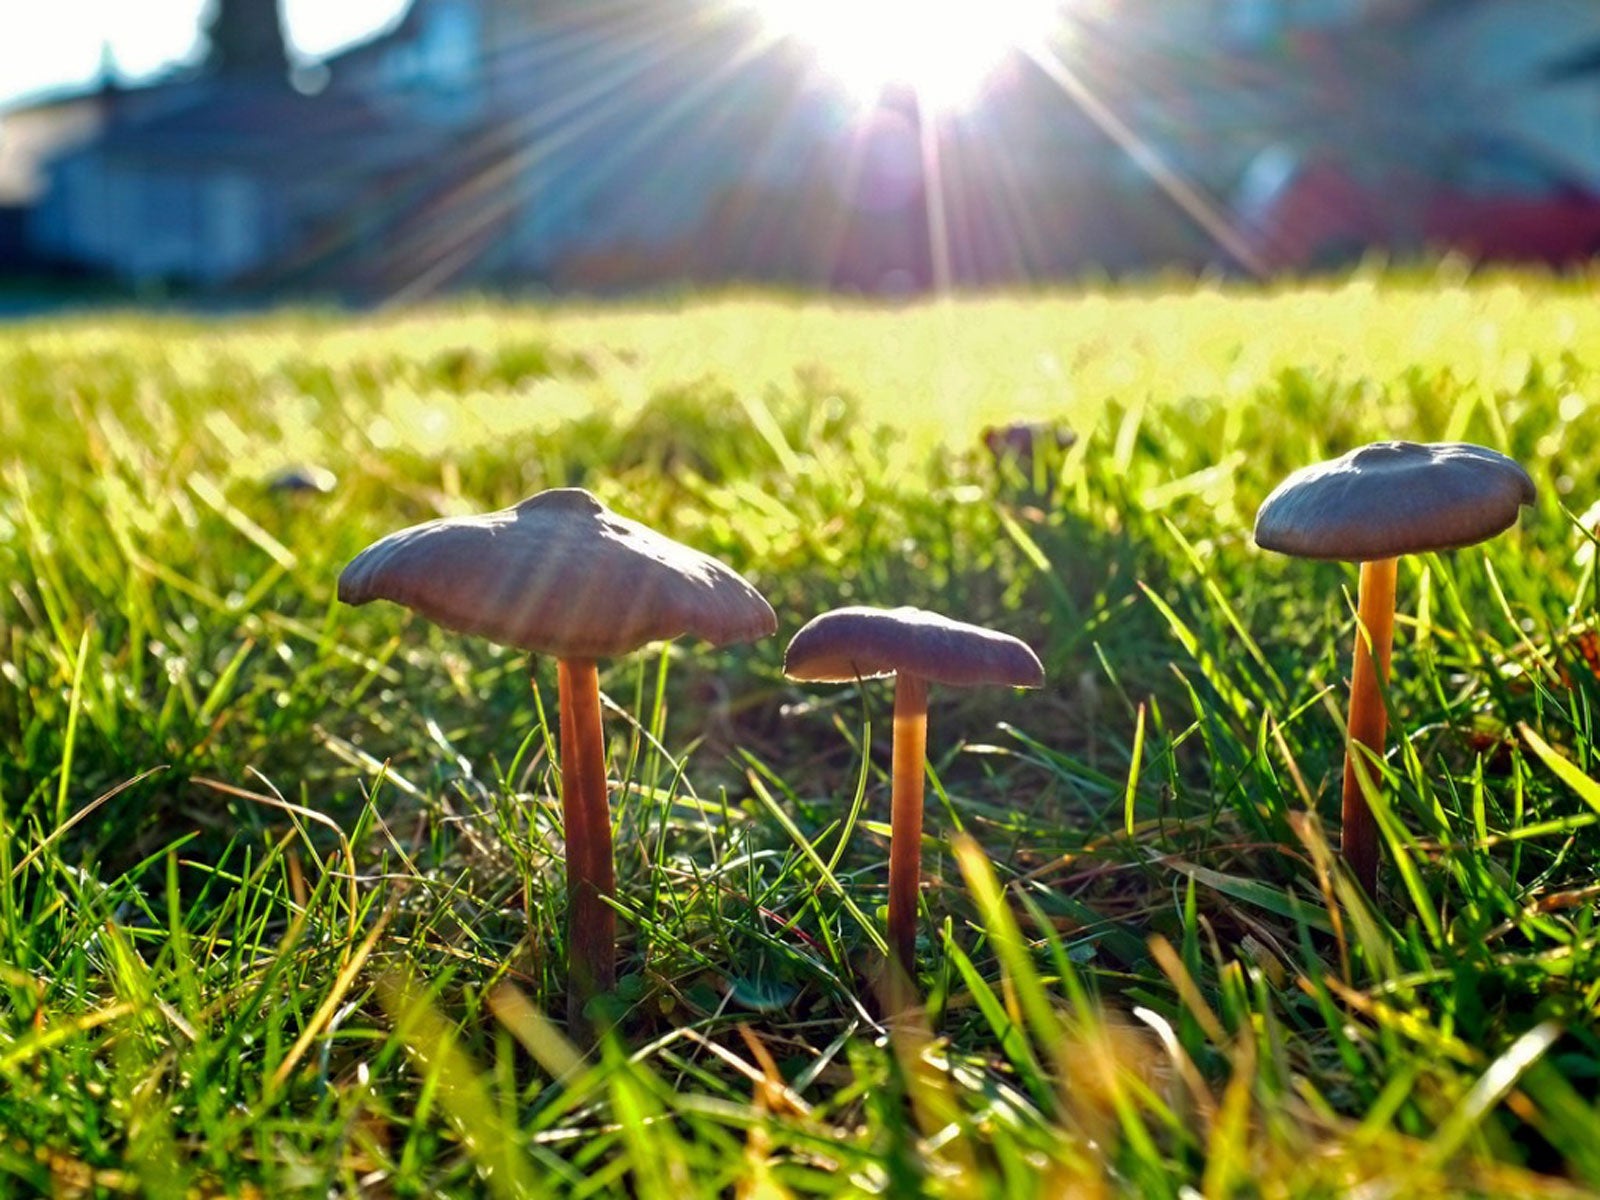 awn mushrooms